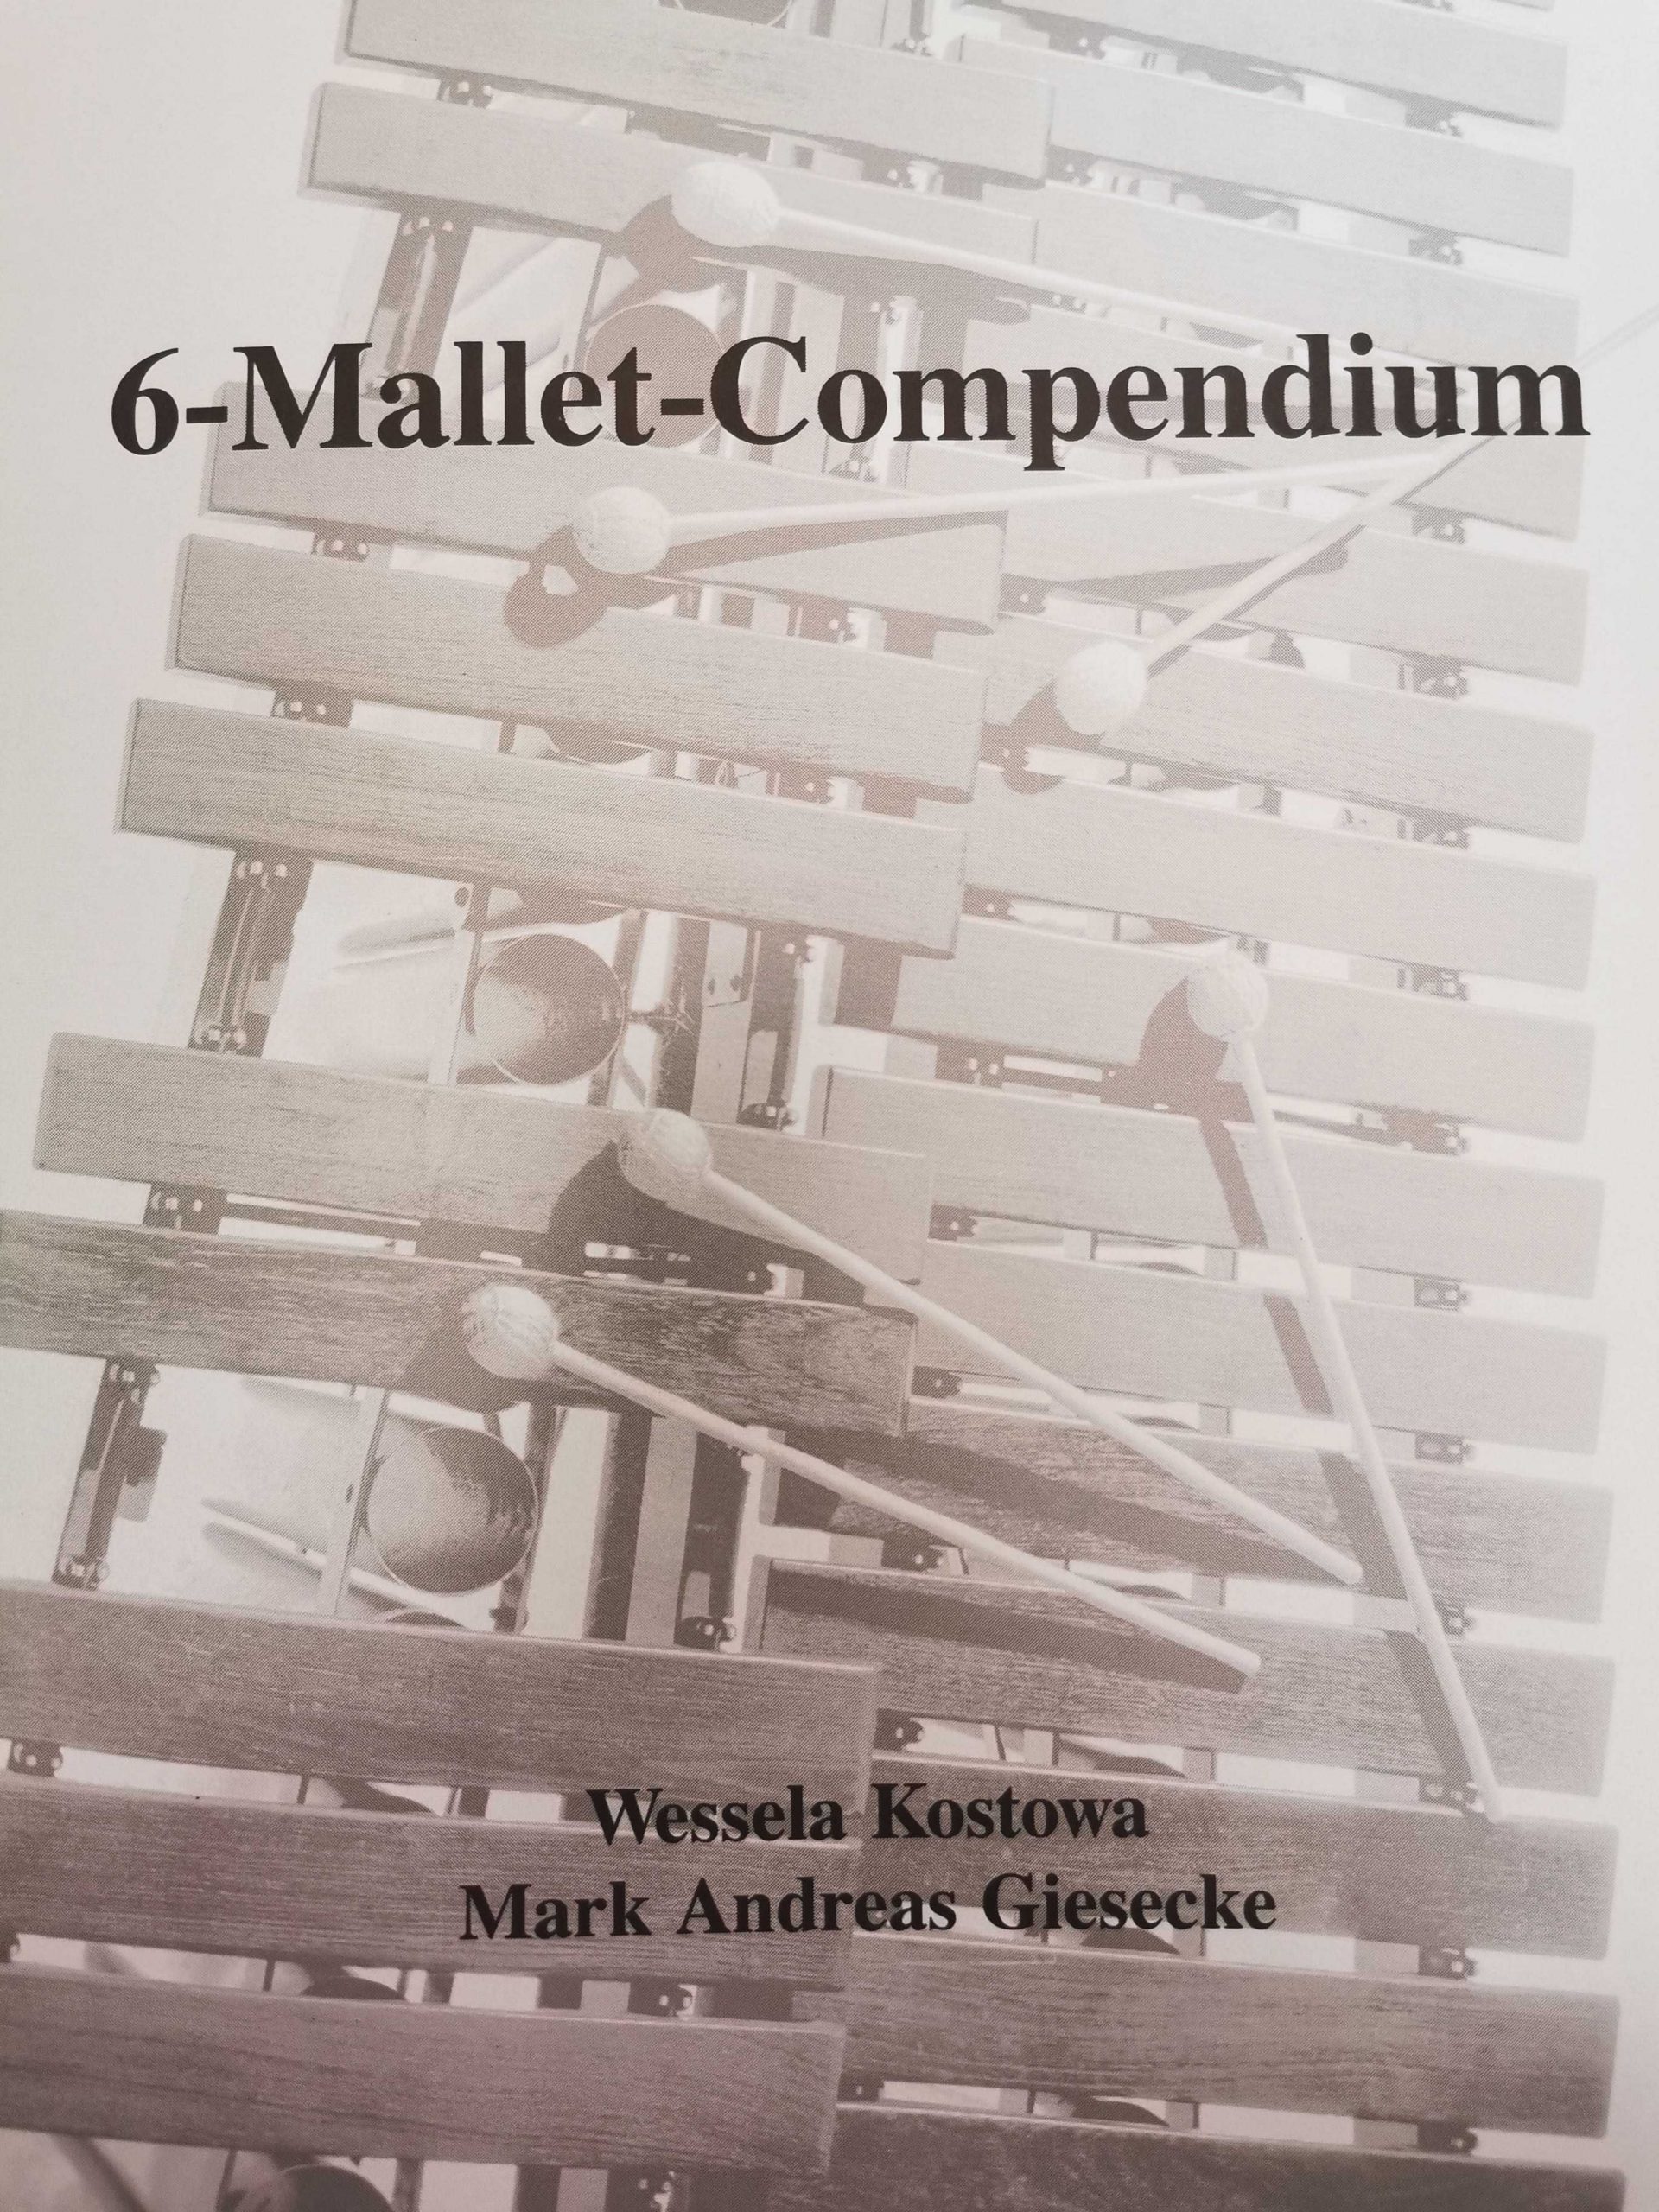 6-Mallet-Compendium (German version) by Wessela Kostowa